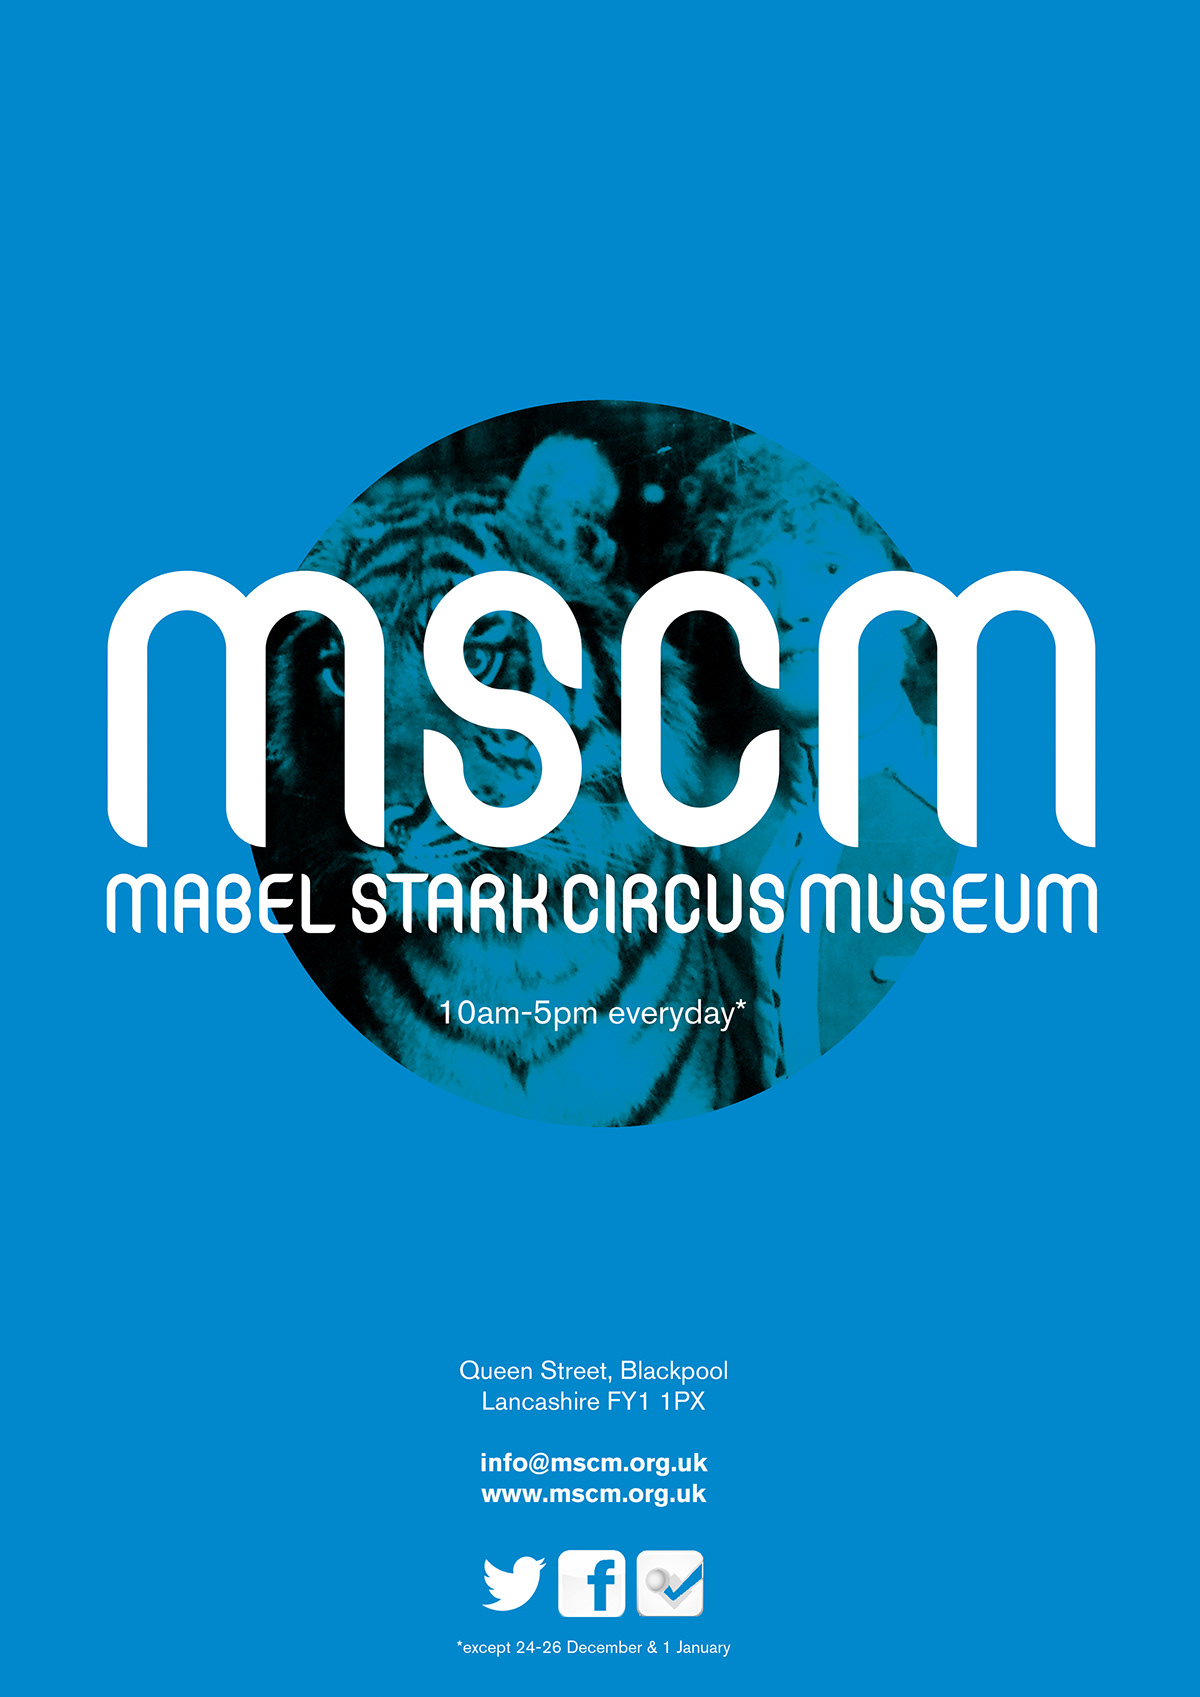 Mabel Stark Circus museum